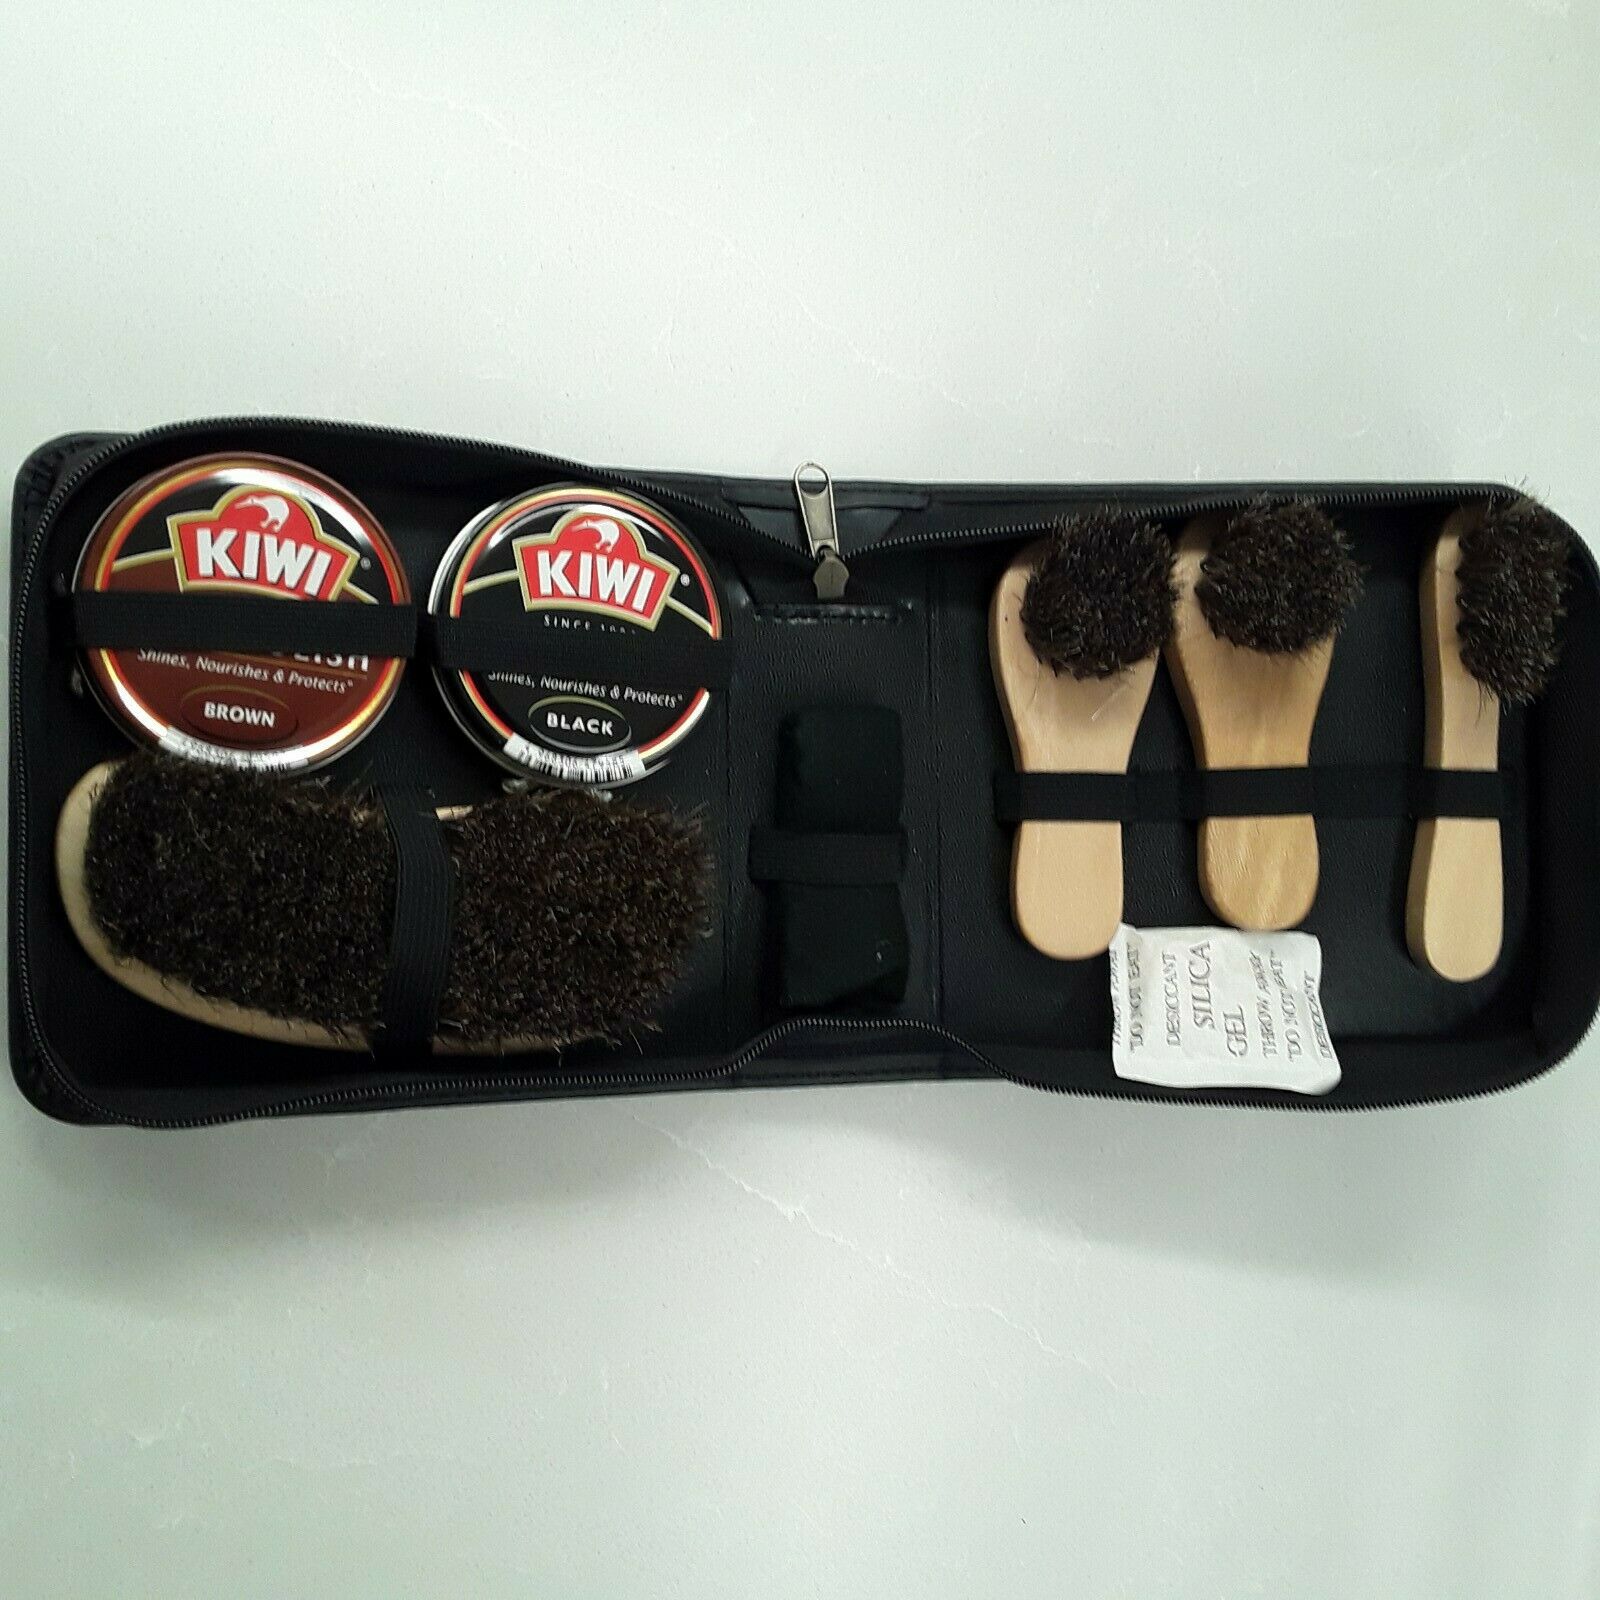 Kiwi Leather Care Travel Kit Black/Brown Dress Shoe Polish Shine Brush